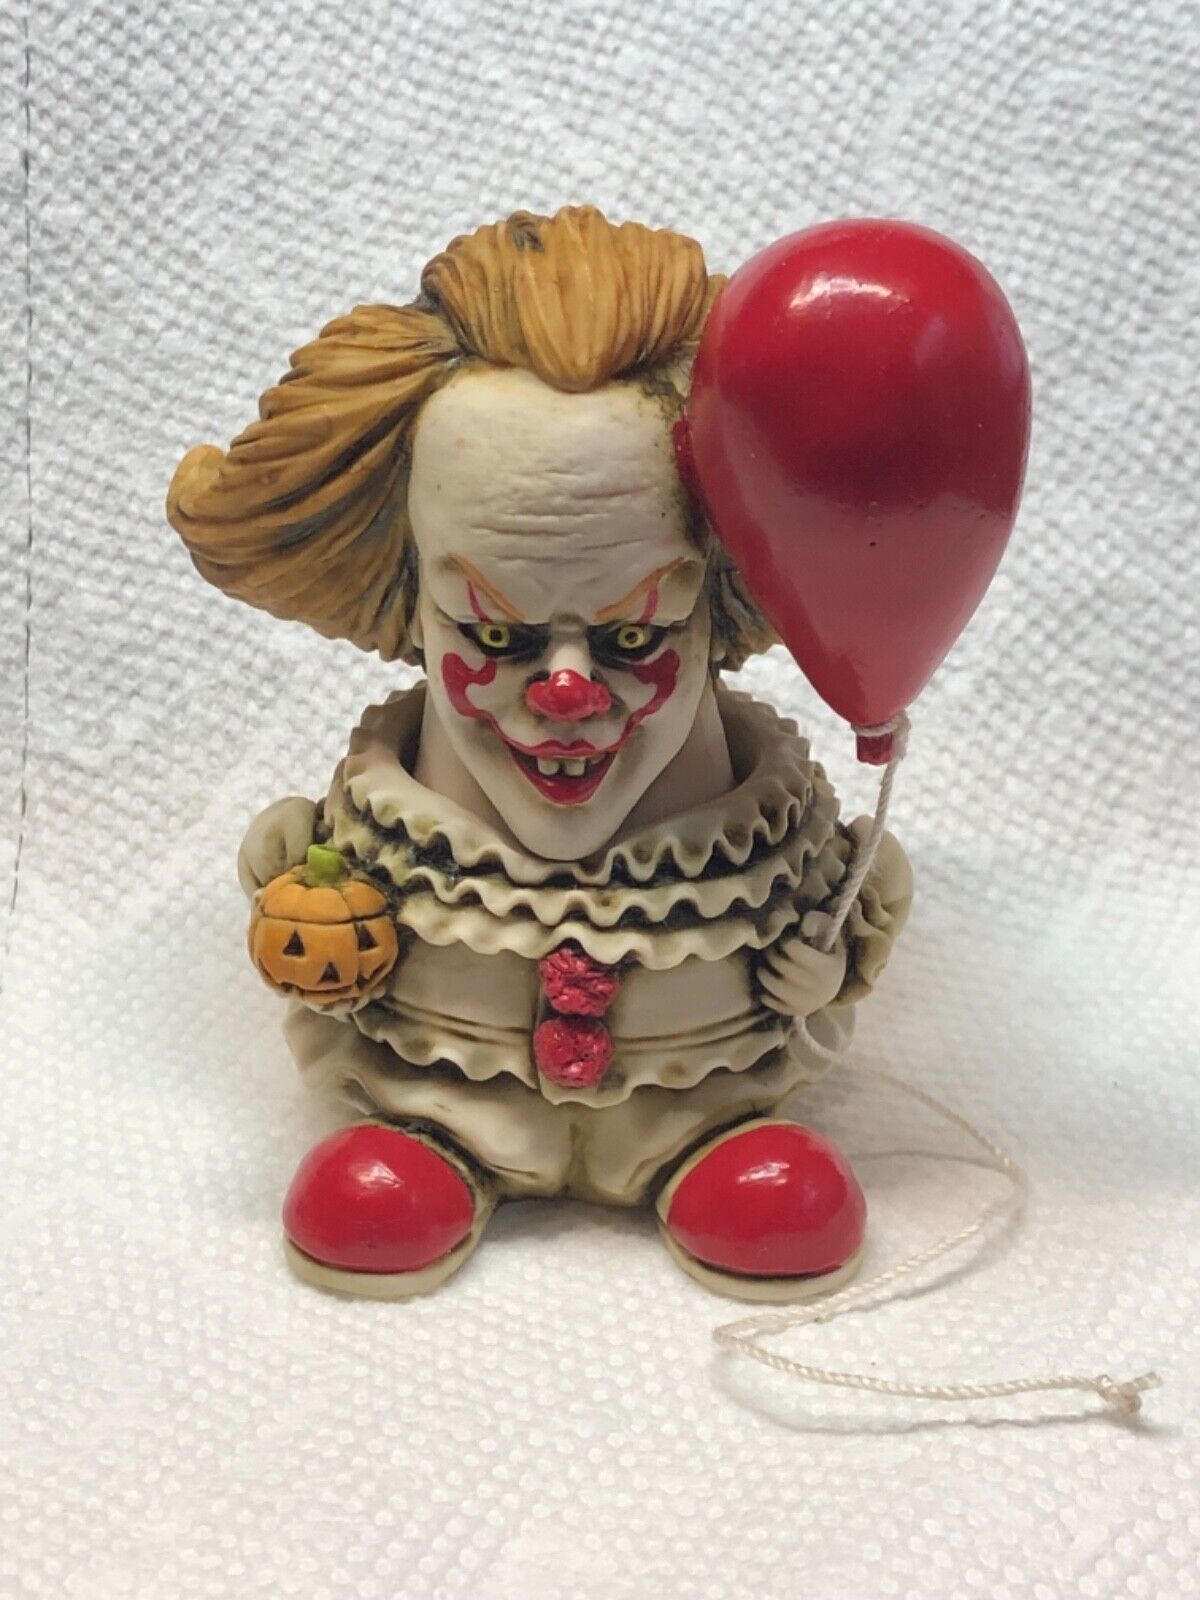 FRMR Kevin Francis Face Pot Artst Neil Eyre Halloween Creepy Horror IT Clown Box